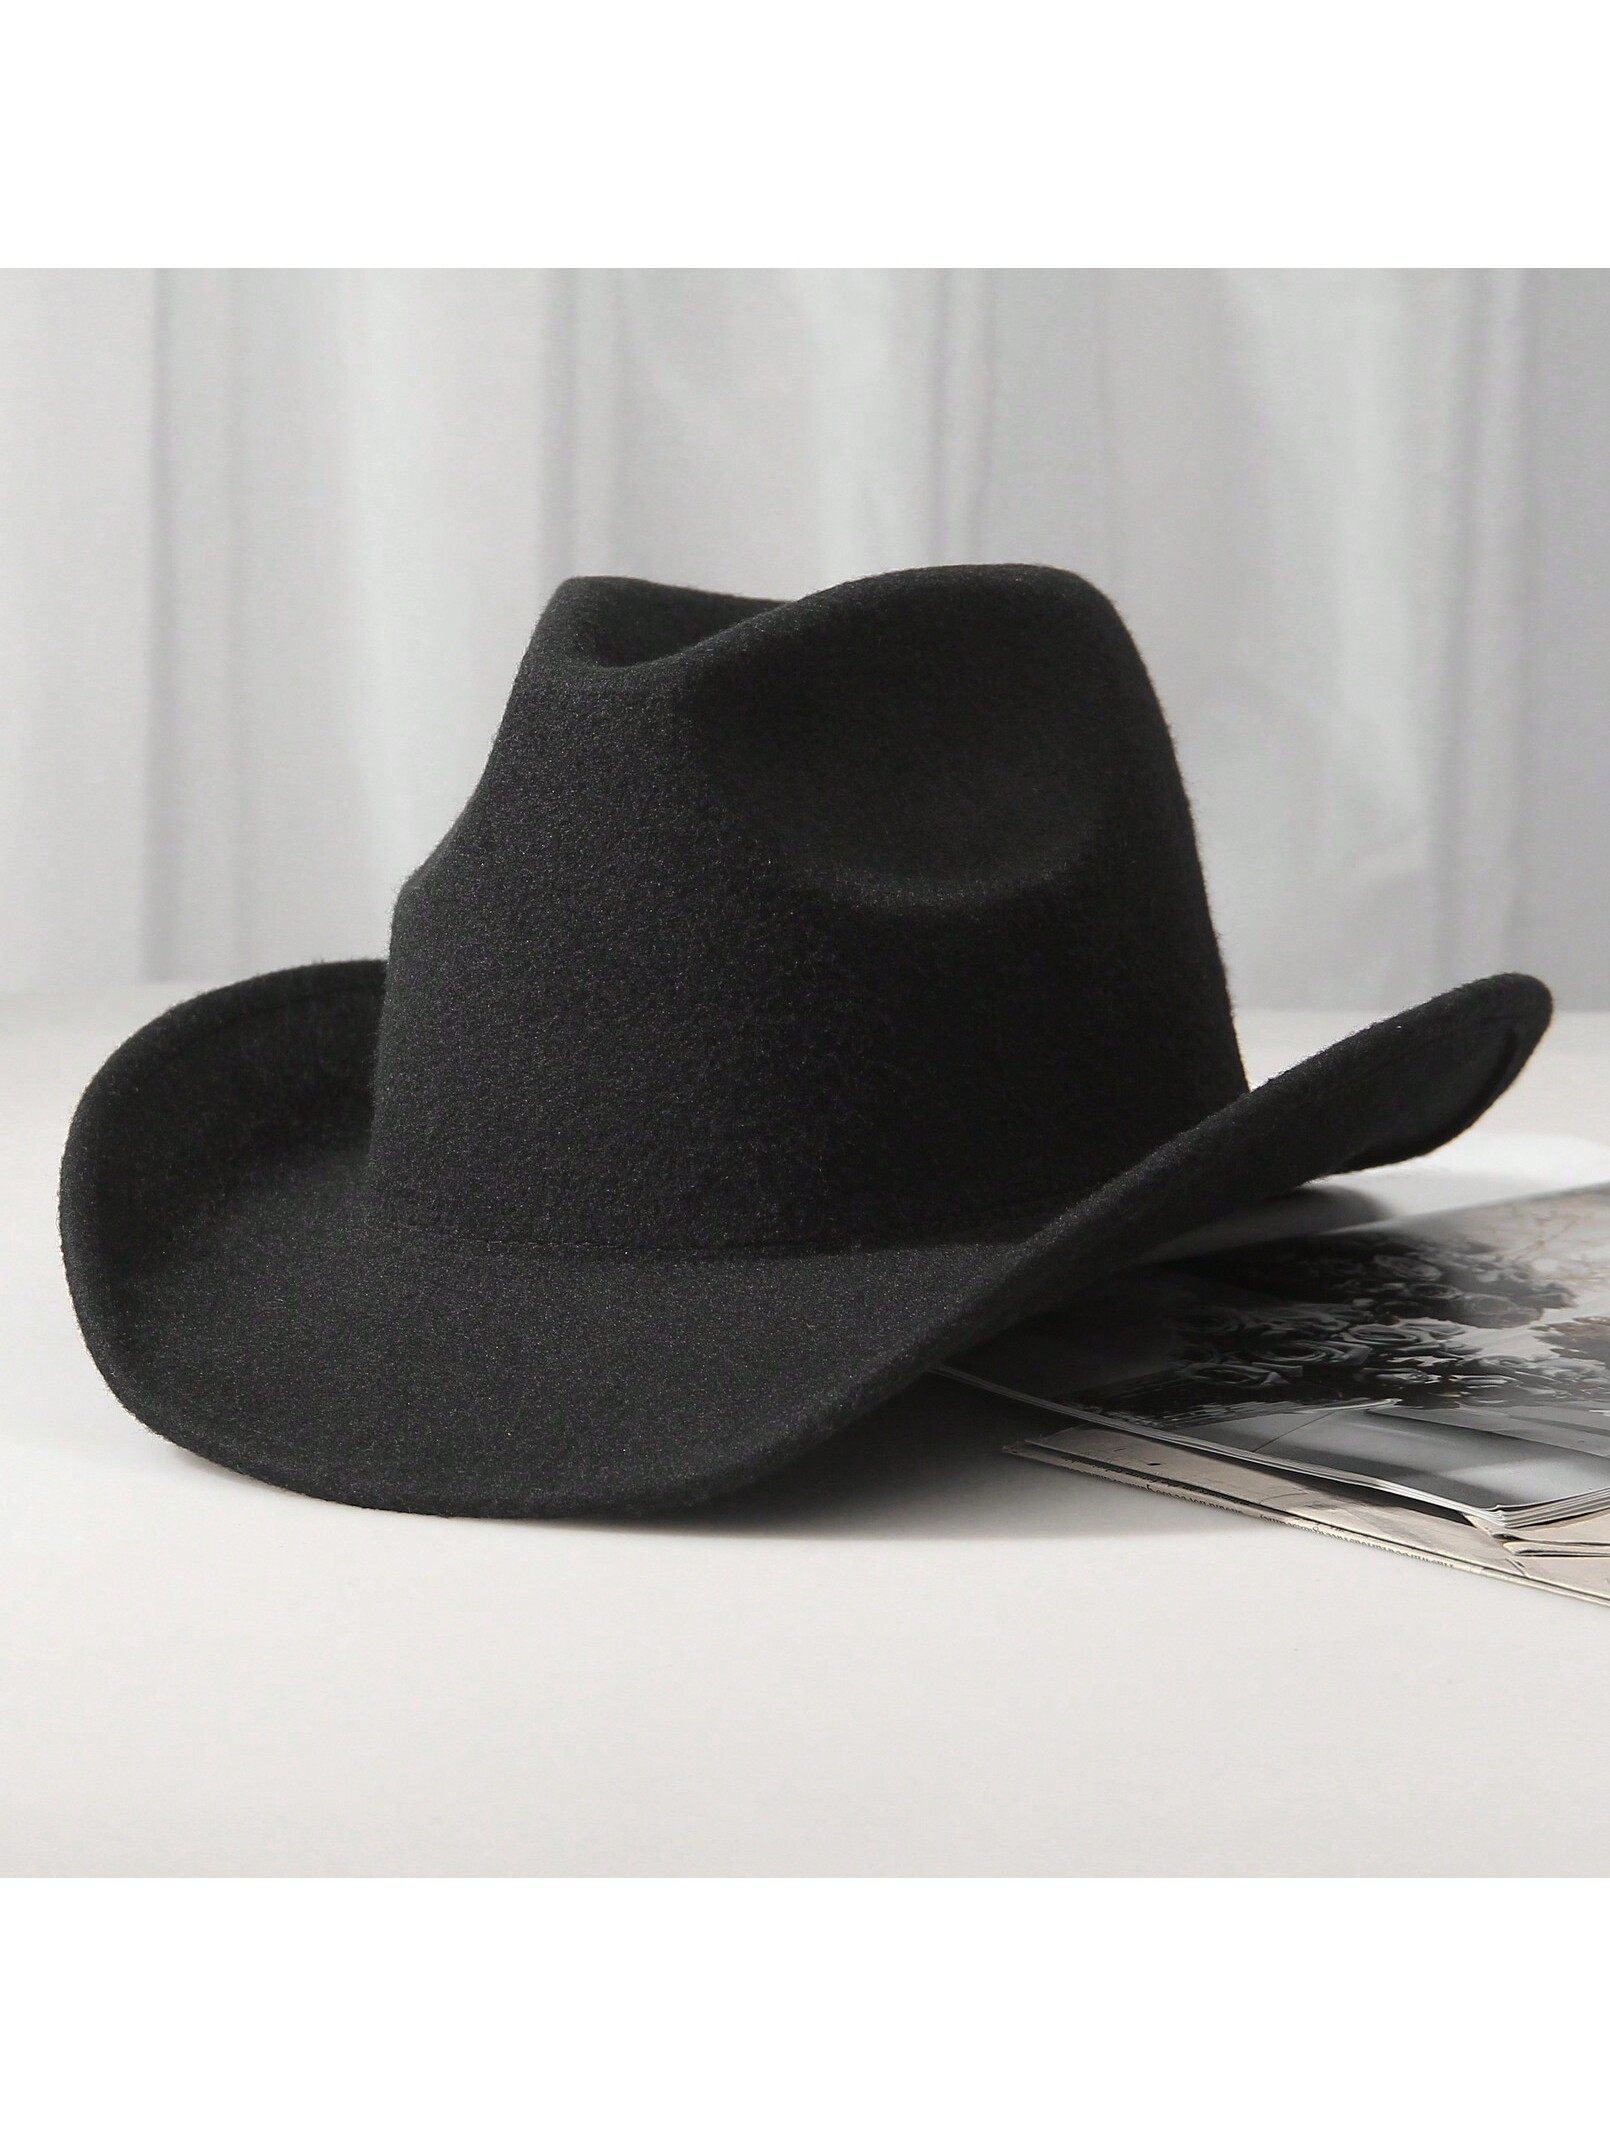 шляпа гламурная ковбойская розовая ковбой набор 10 шт 1шт унисекс шерстяная ковбойская шляпа-ковбойская шляпа в западном стиле черная ковбойская шляпа, черный